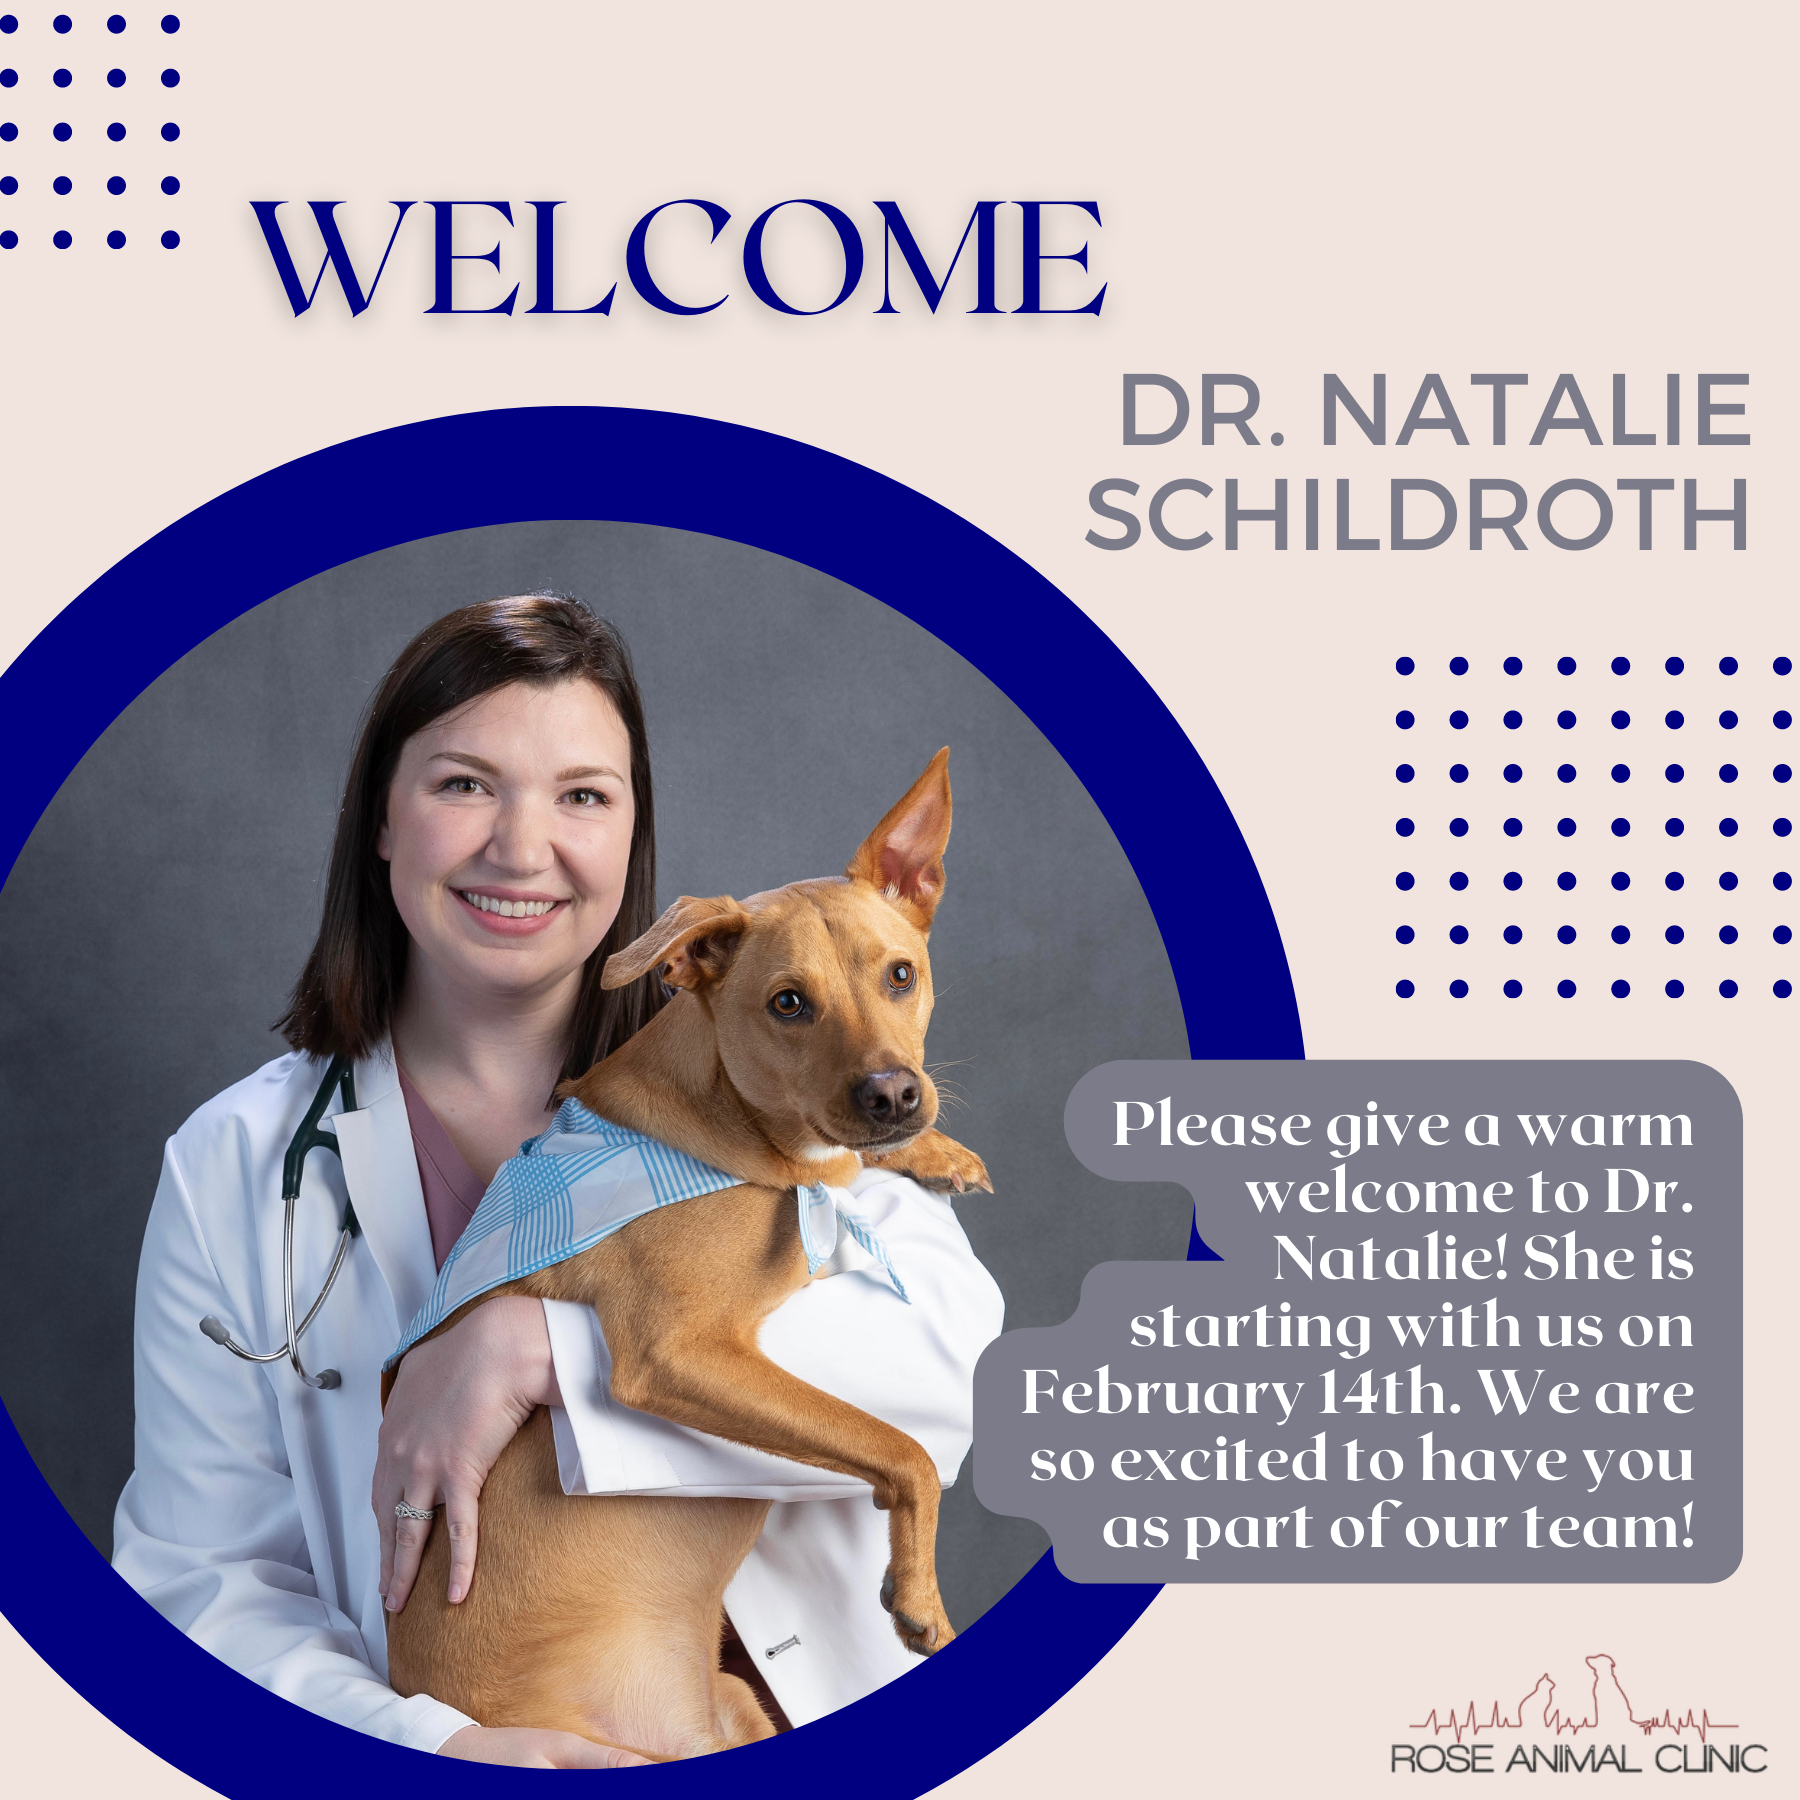 Welcome Dr. Natalie Schildroth